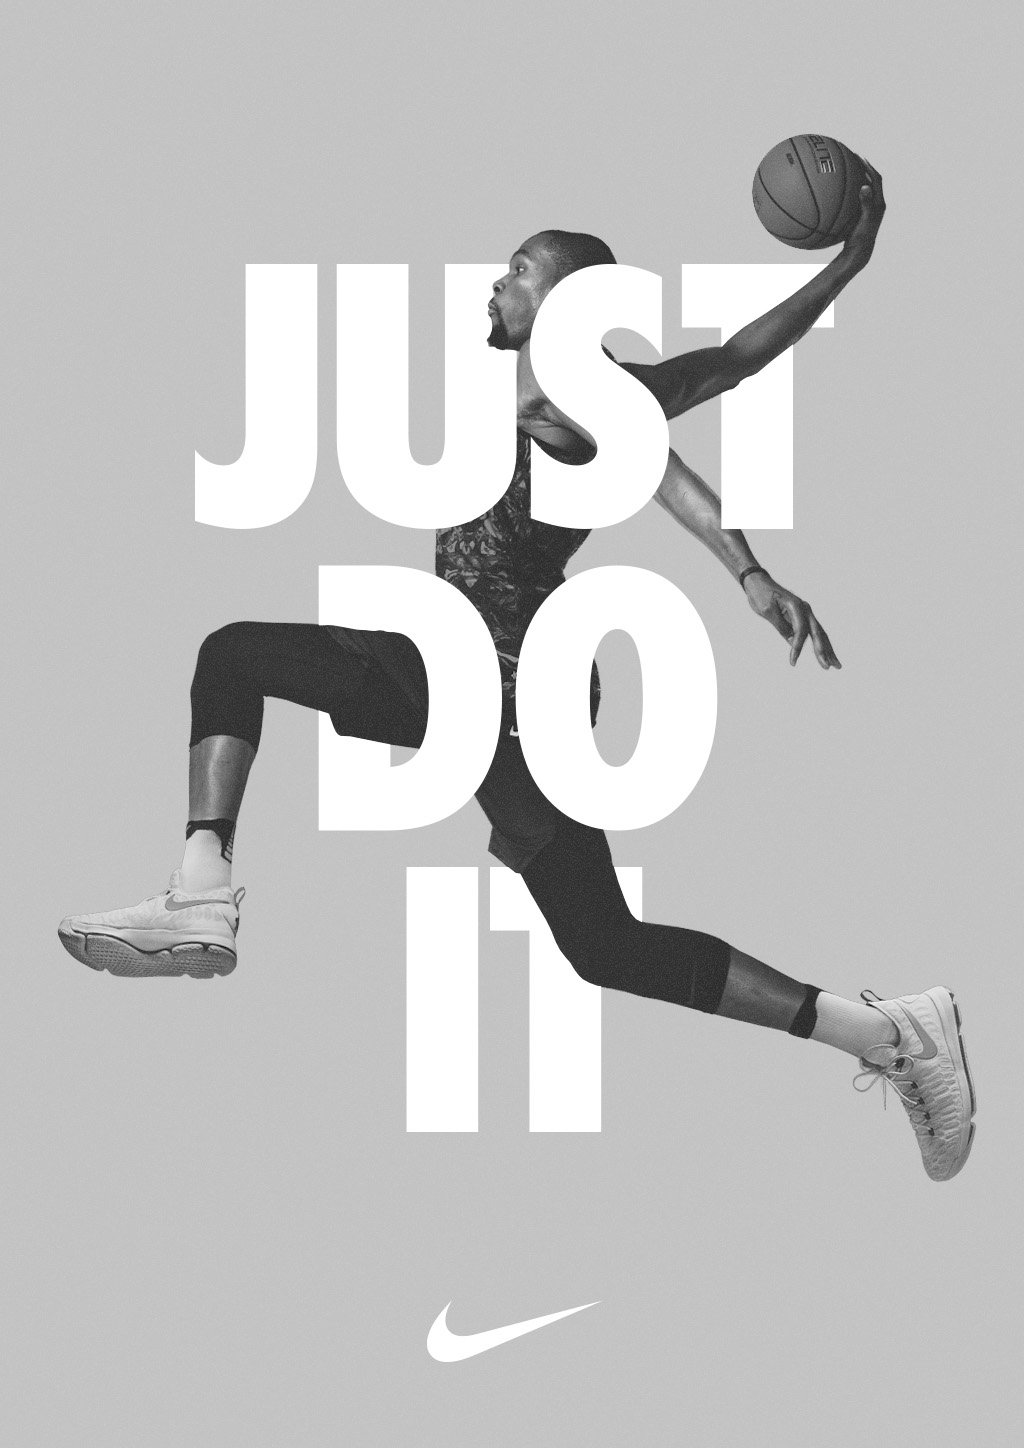 Nike Poster, affiche nike - okgo.net